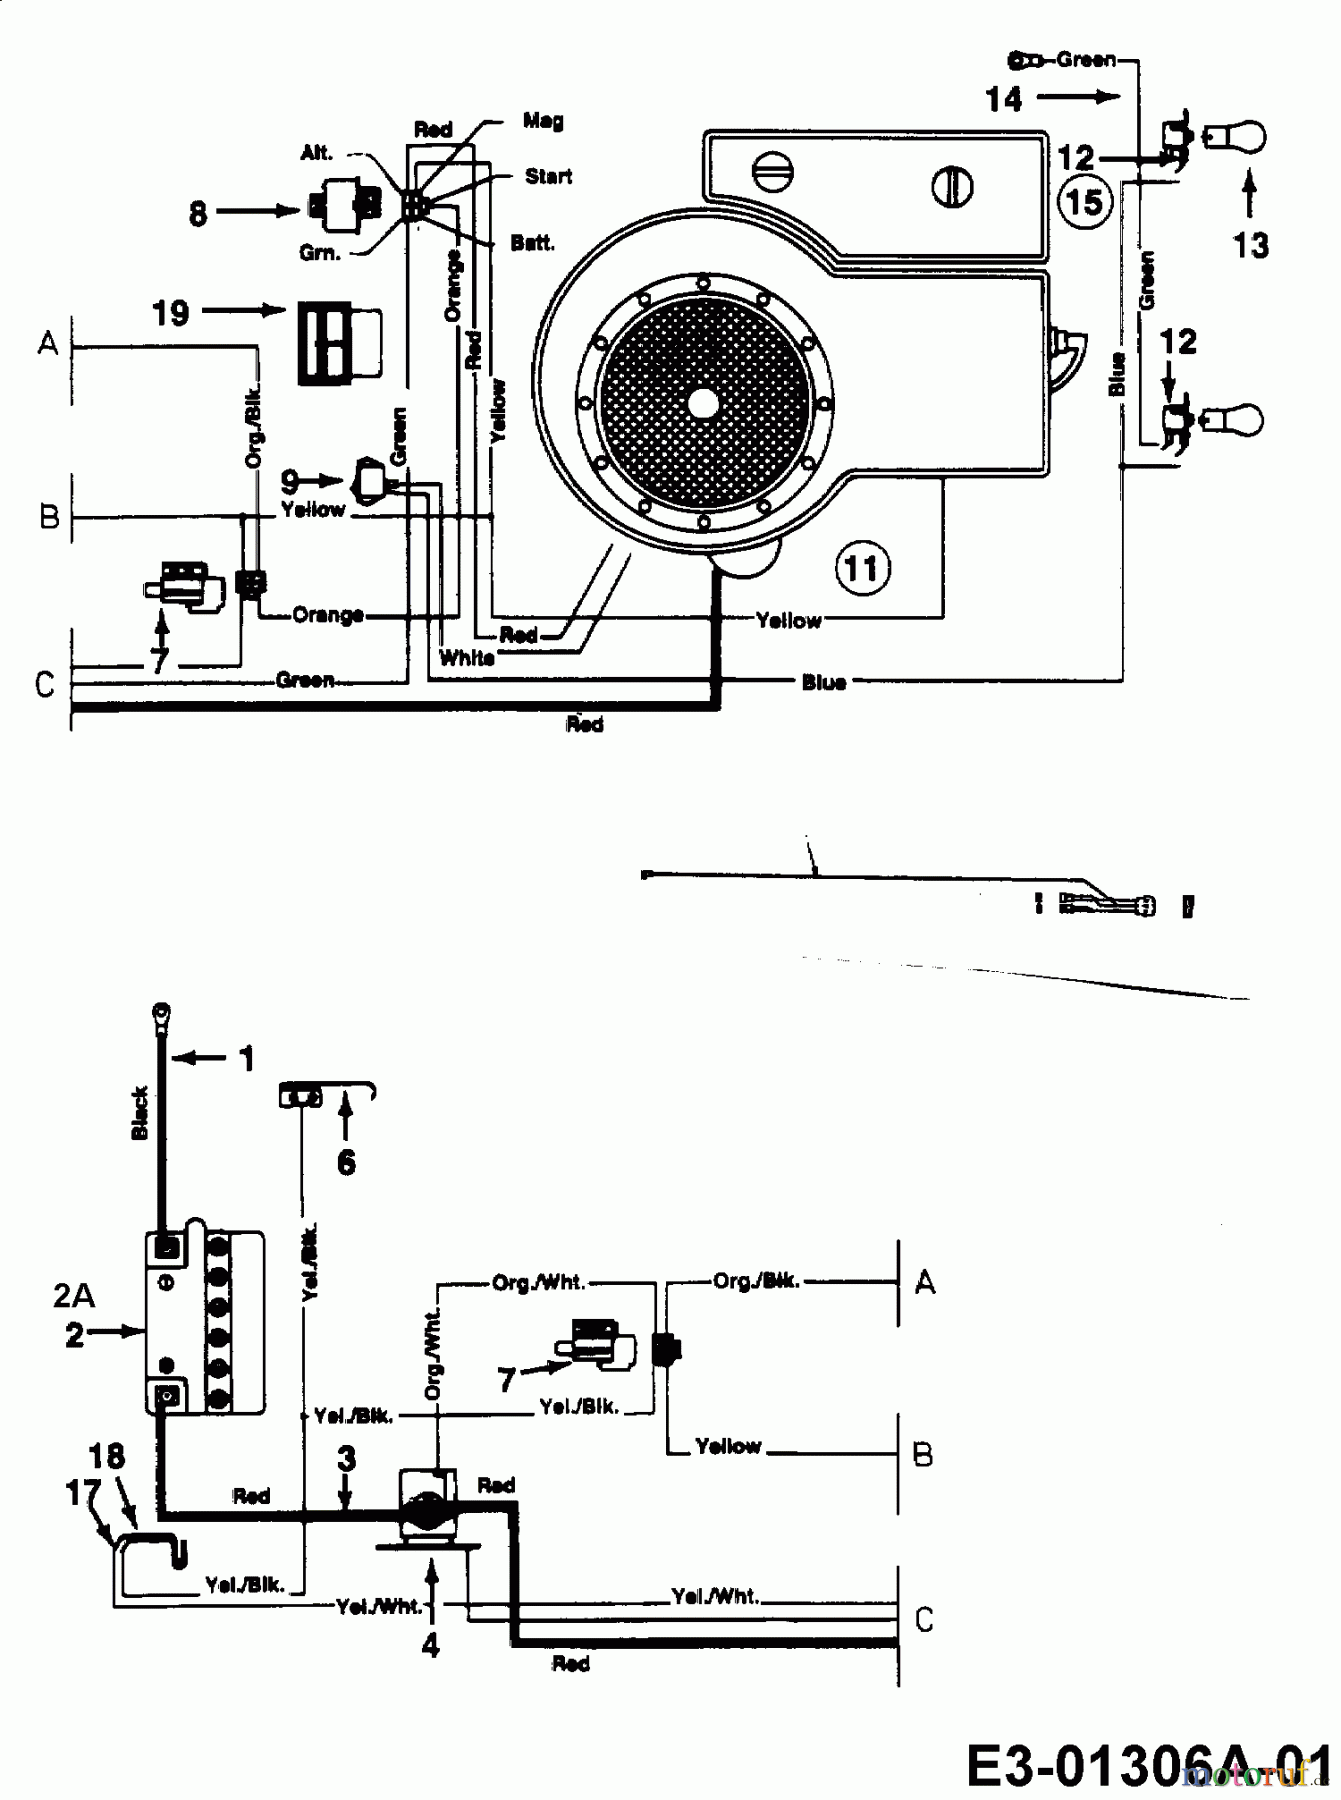  Harry Tracteurs de pelouse 131 B 12 13AH452C662  (2000) Plan électrique cylindre simple